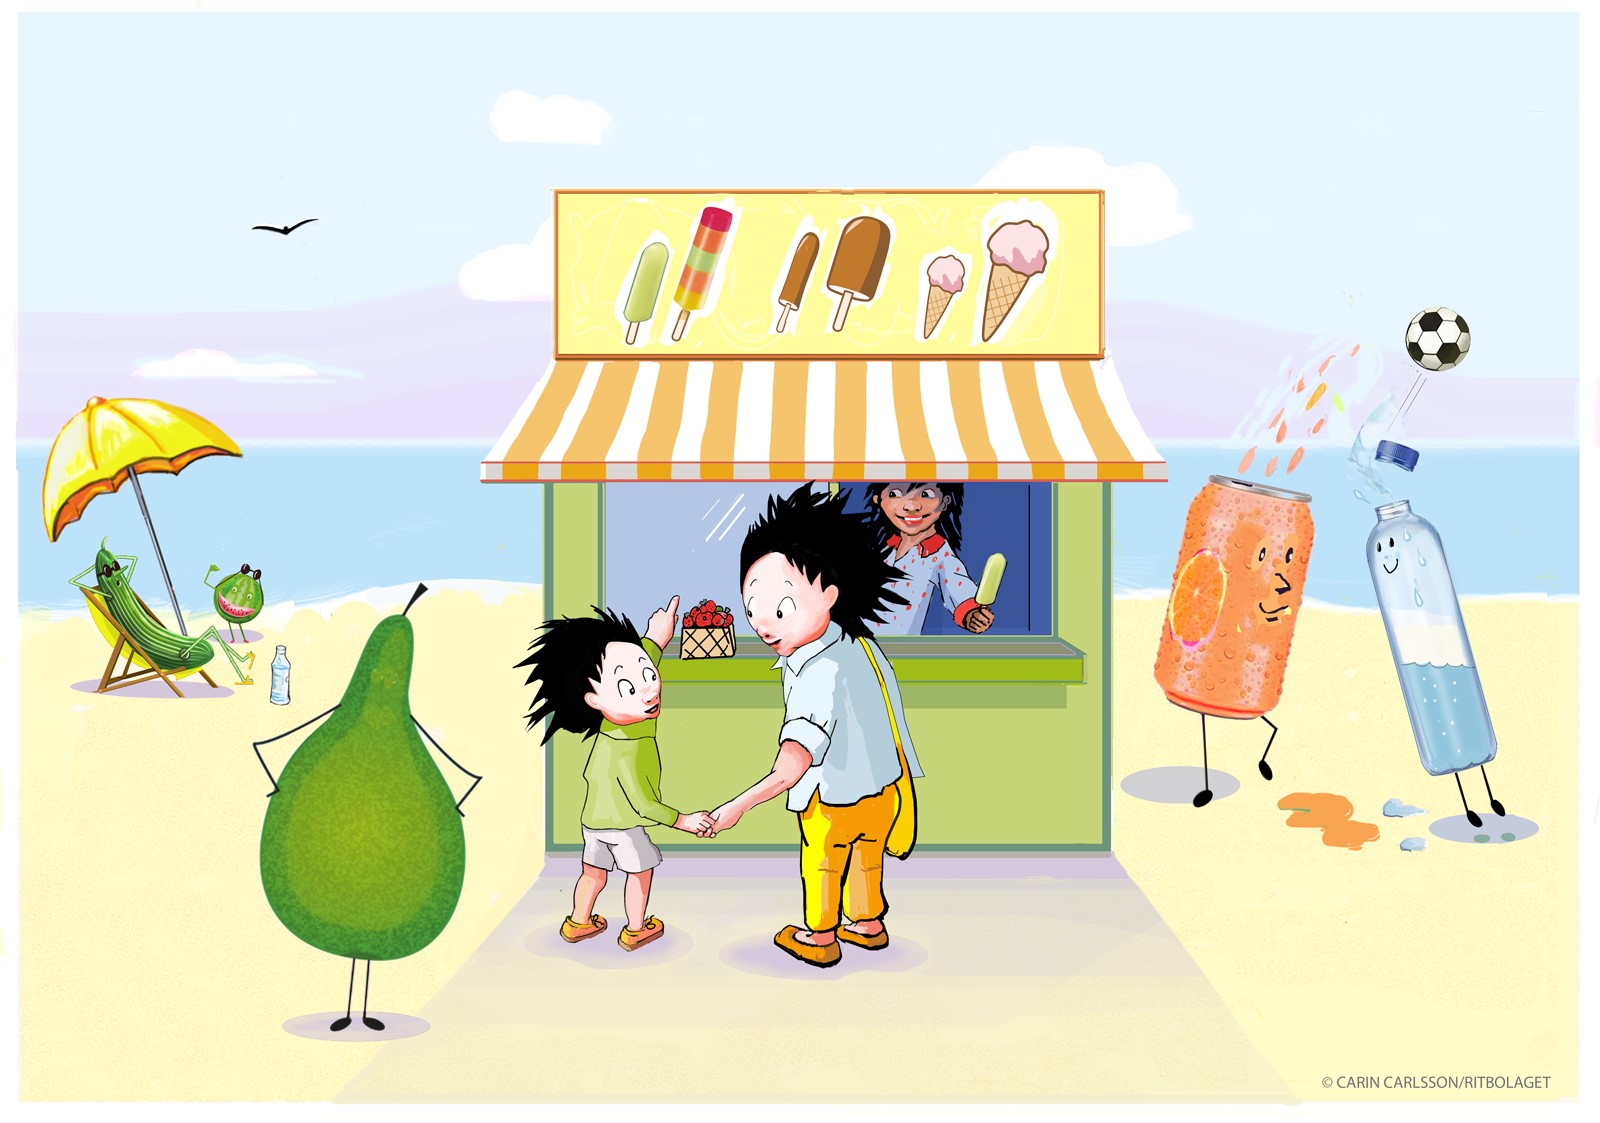 Lilla trollet och trollets pappa står på en sandstrand framför en glasskiosk och köpa glass. Pappa håller lilla trollet i handen och med den andra handen pekar lilla trollet på en glass.